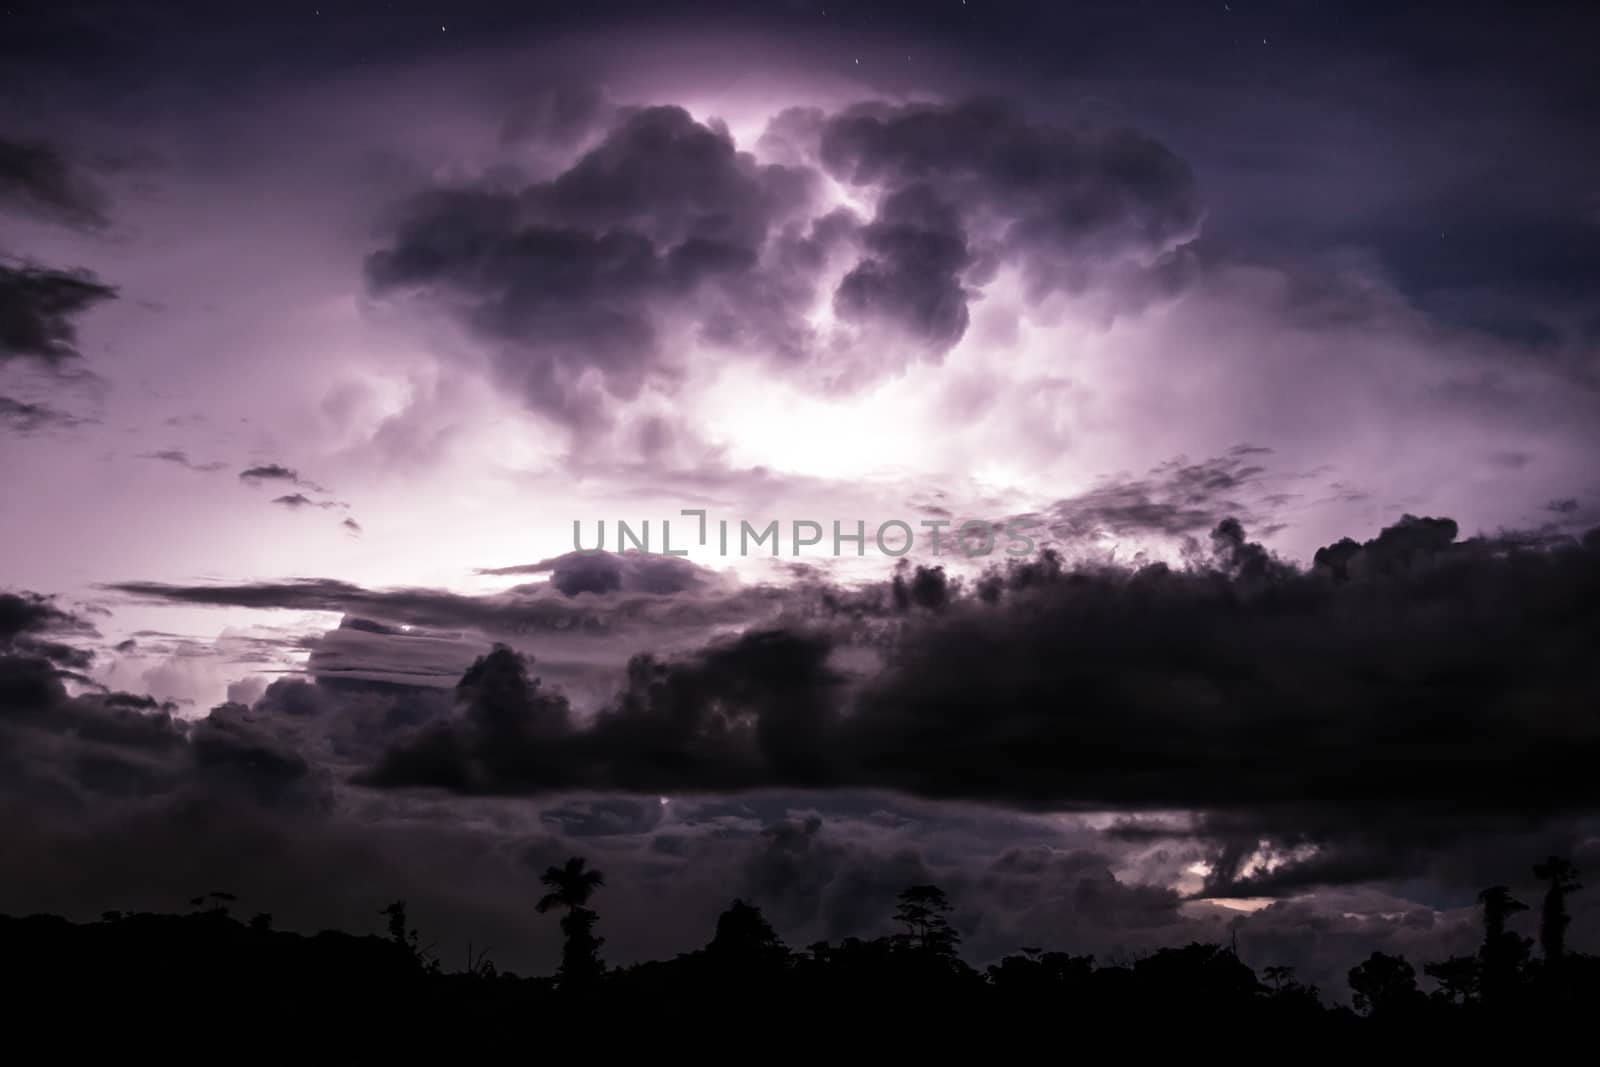 Thundercloud illuminated by lightning by juhku